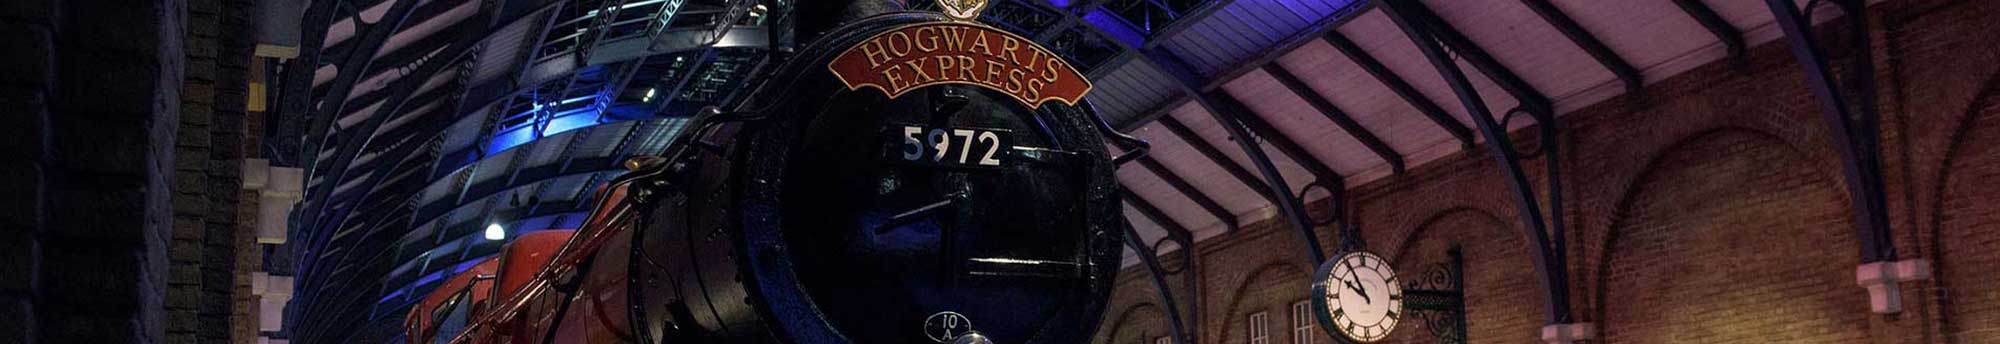 Hotel + Biglietti Tour Harry Potter negli Studi Warner